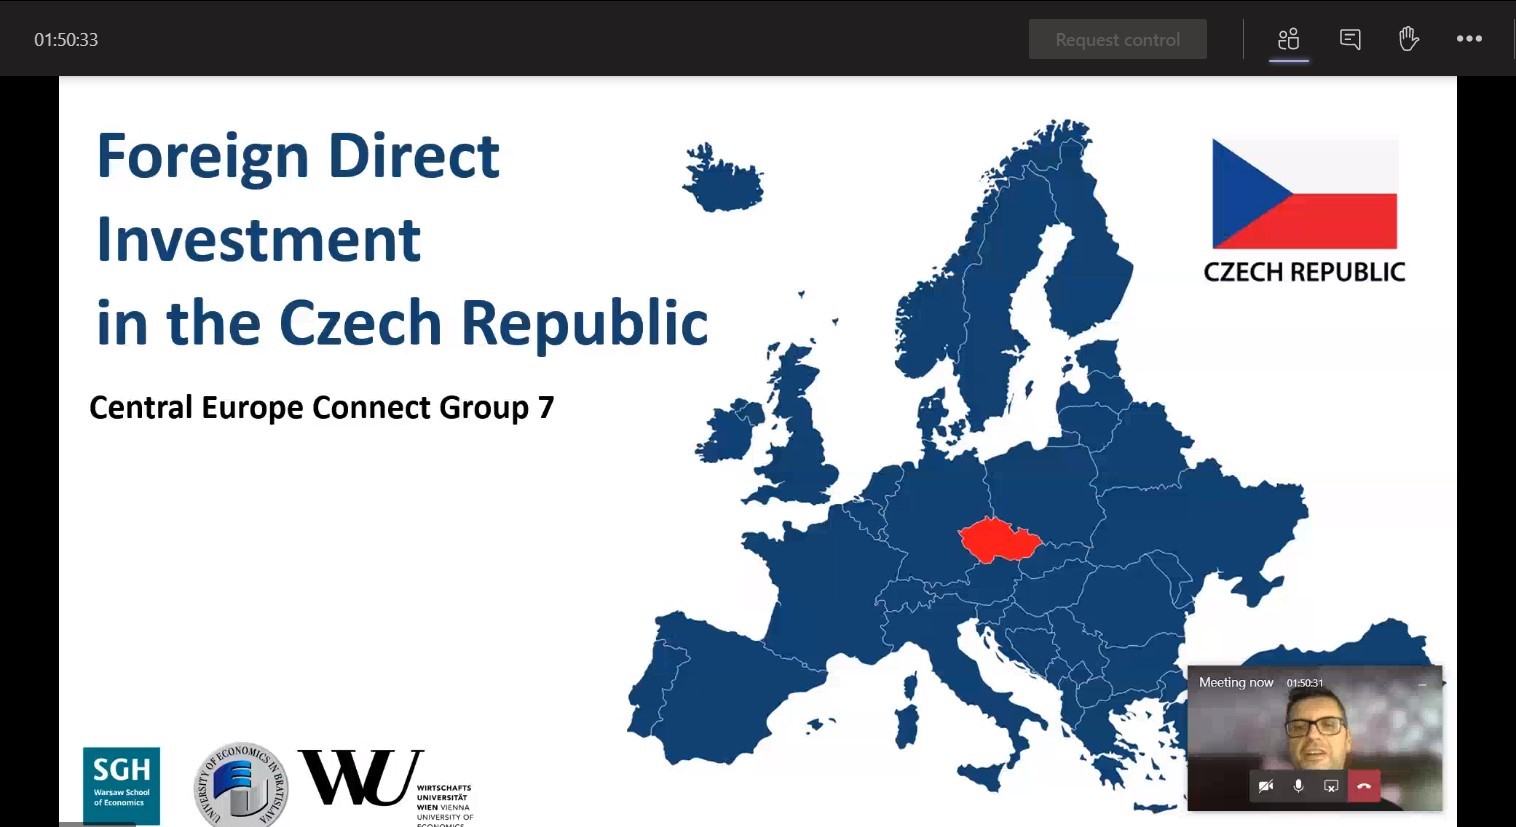 Projekt Central Europe Connect vo svojej 4. edícii virtuálne spojil študentov ekonomických univerzít troch štátov